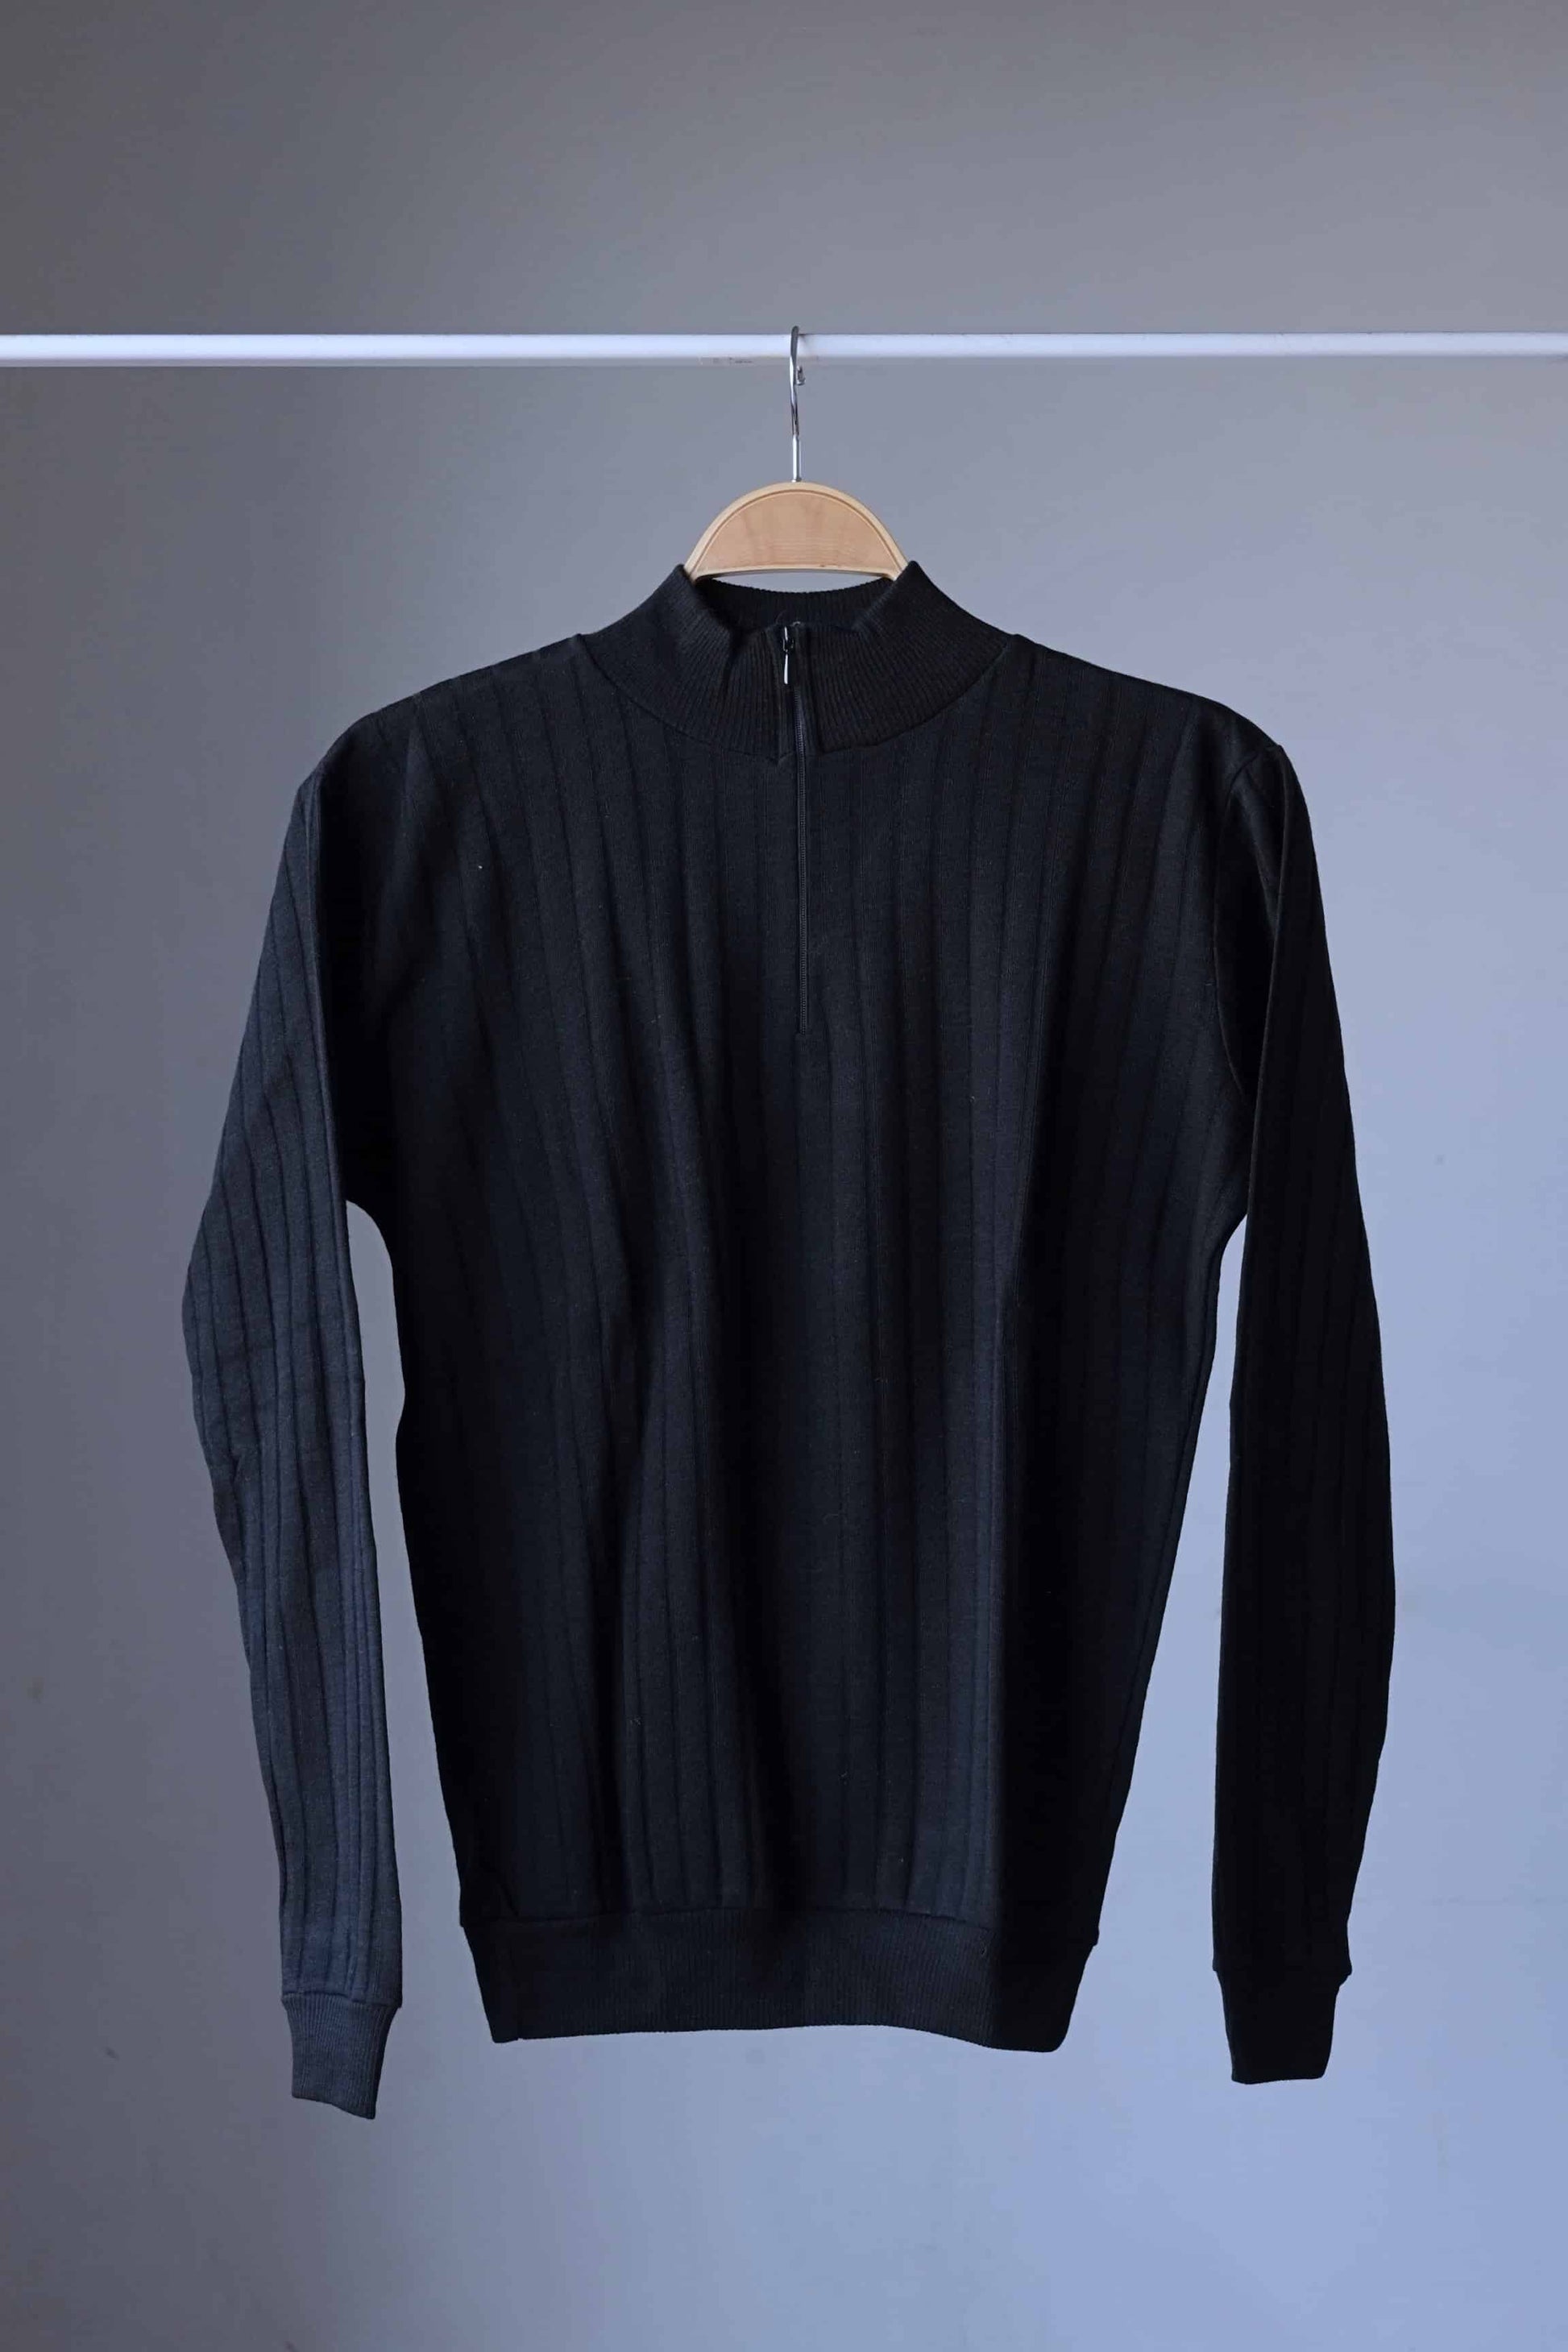 70's Zip Neck Men's Sweater black